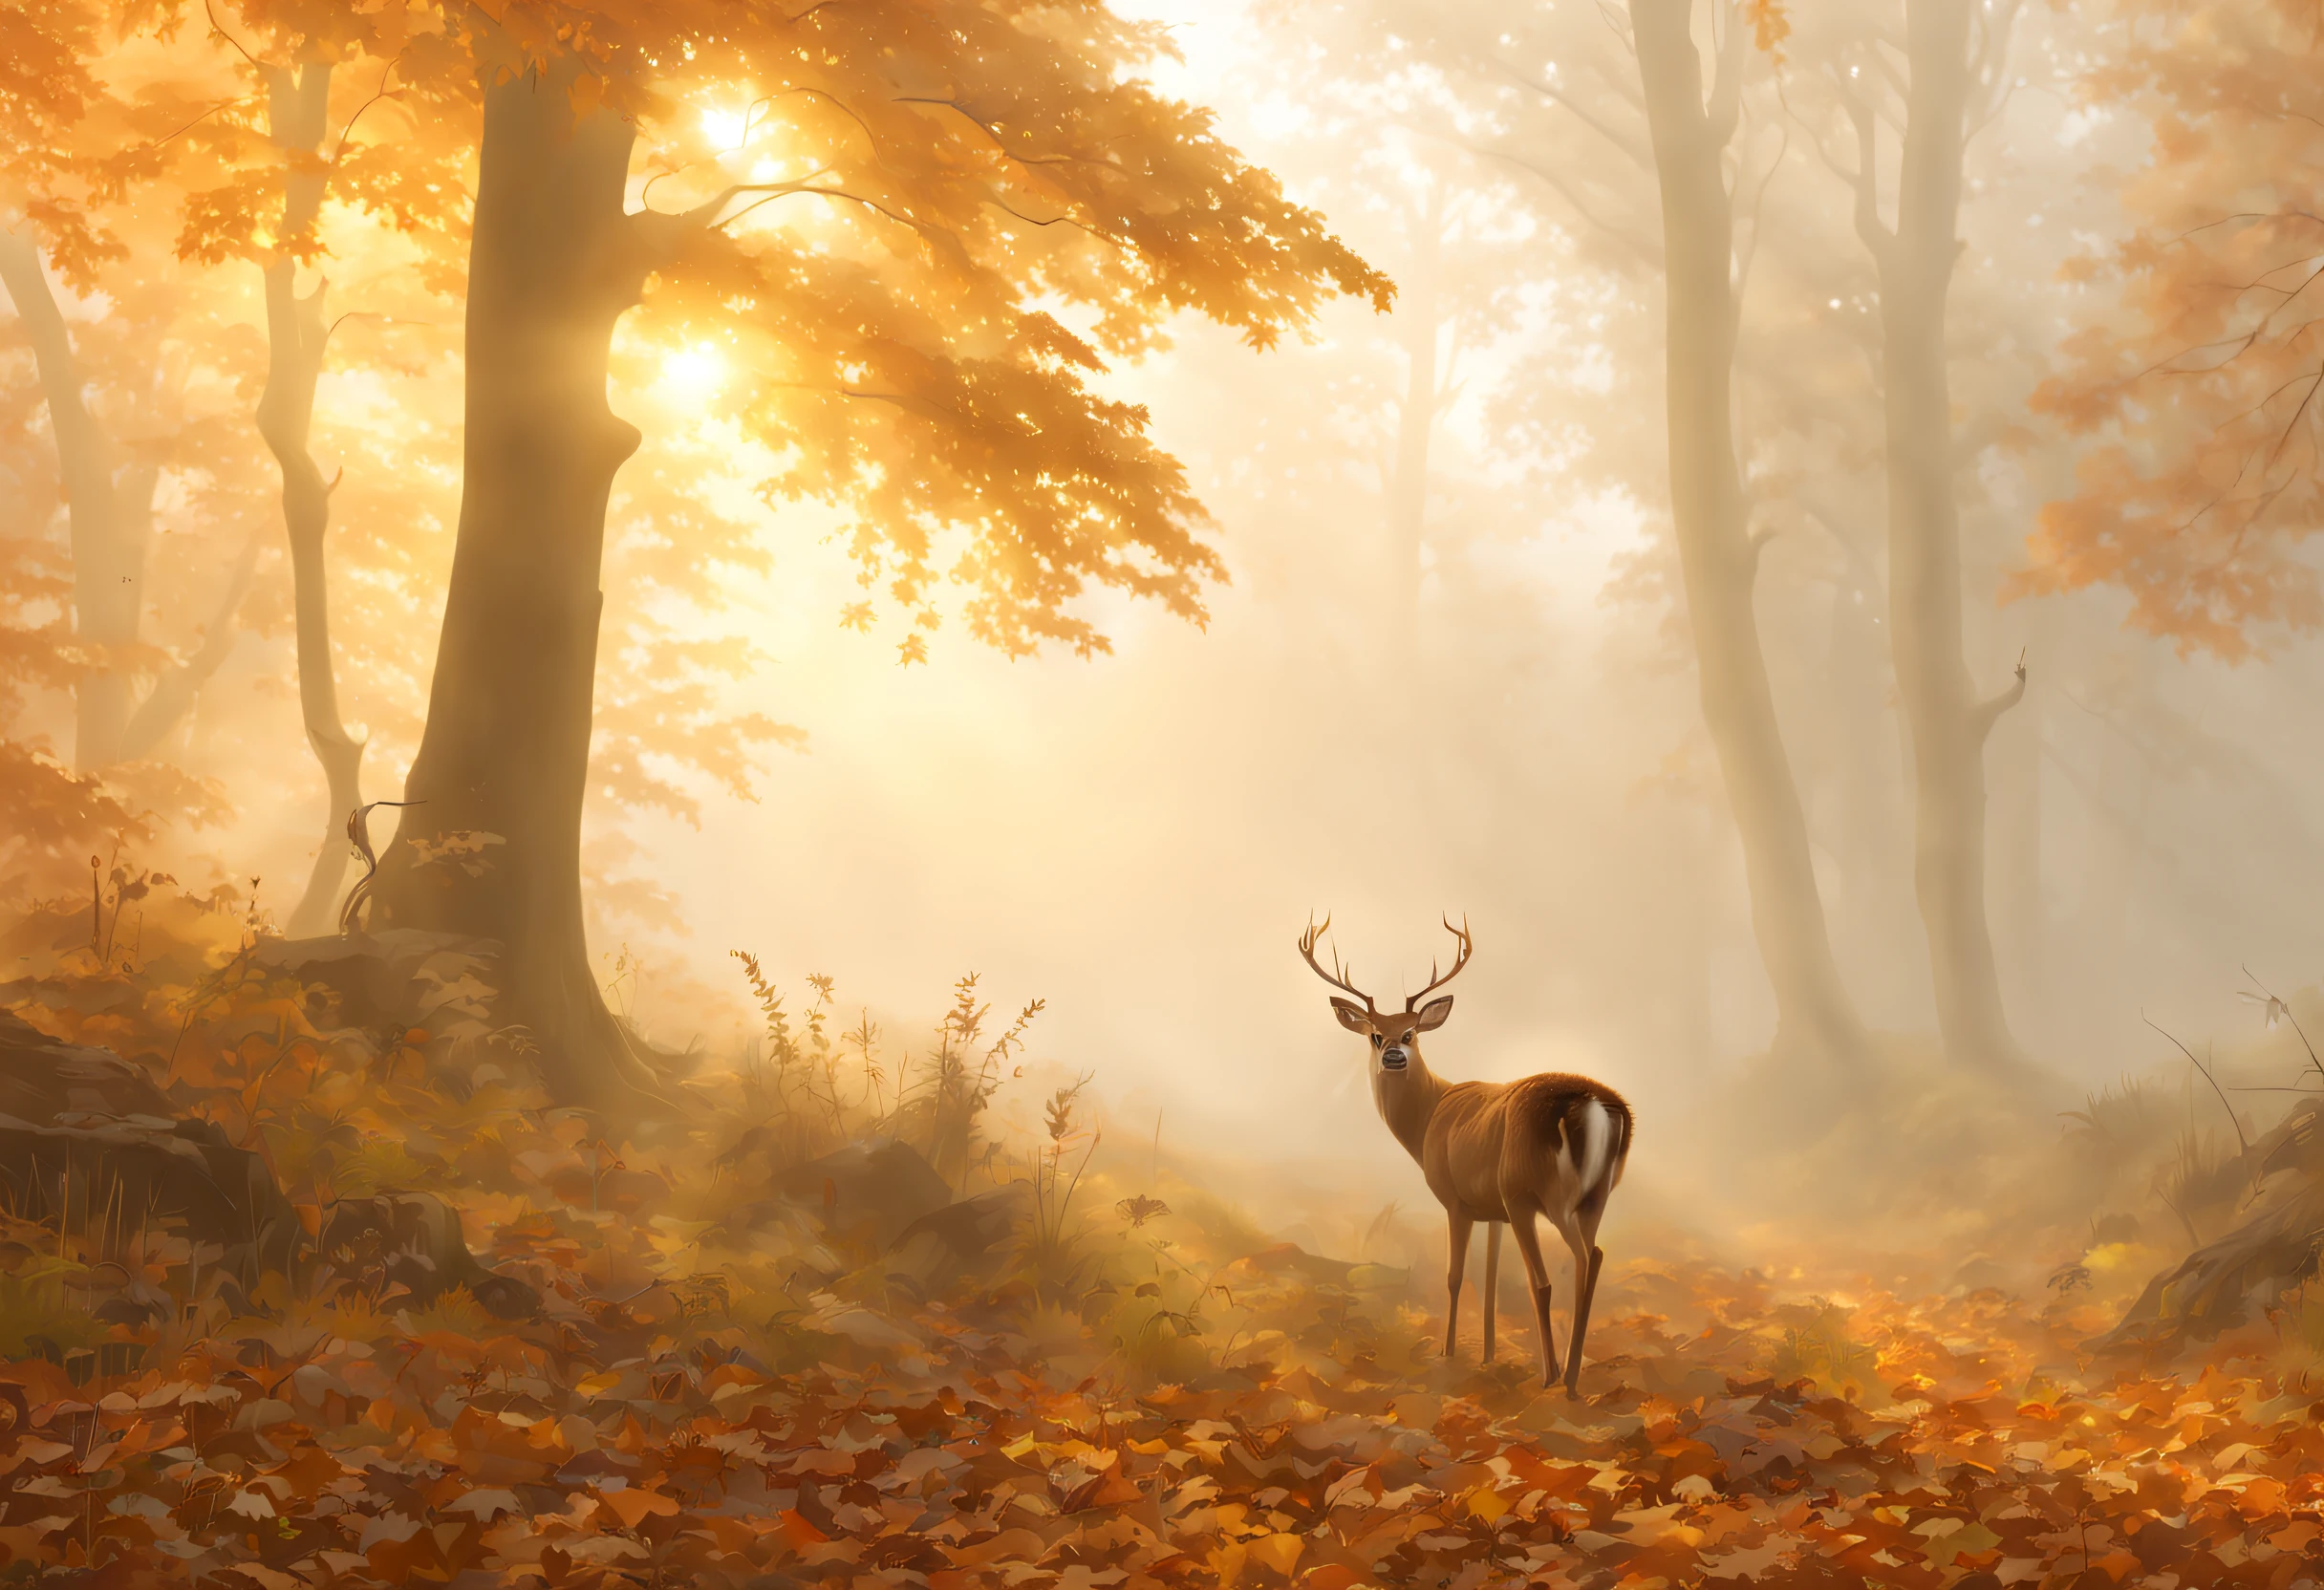 (最高品質, 4K, 8k, 高解像度, 傑作: 1.2), 超詳細, (現実的, photo現実的, photo現実的: 1.37),美しい秋の景色, 夢のような, 森の中は霧が多い, 霧の中から鹿が現れる, 素晴らしい受賞作品.